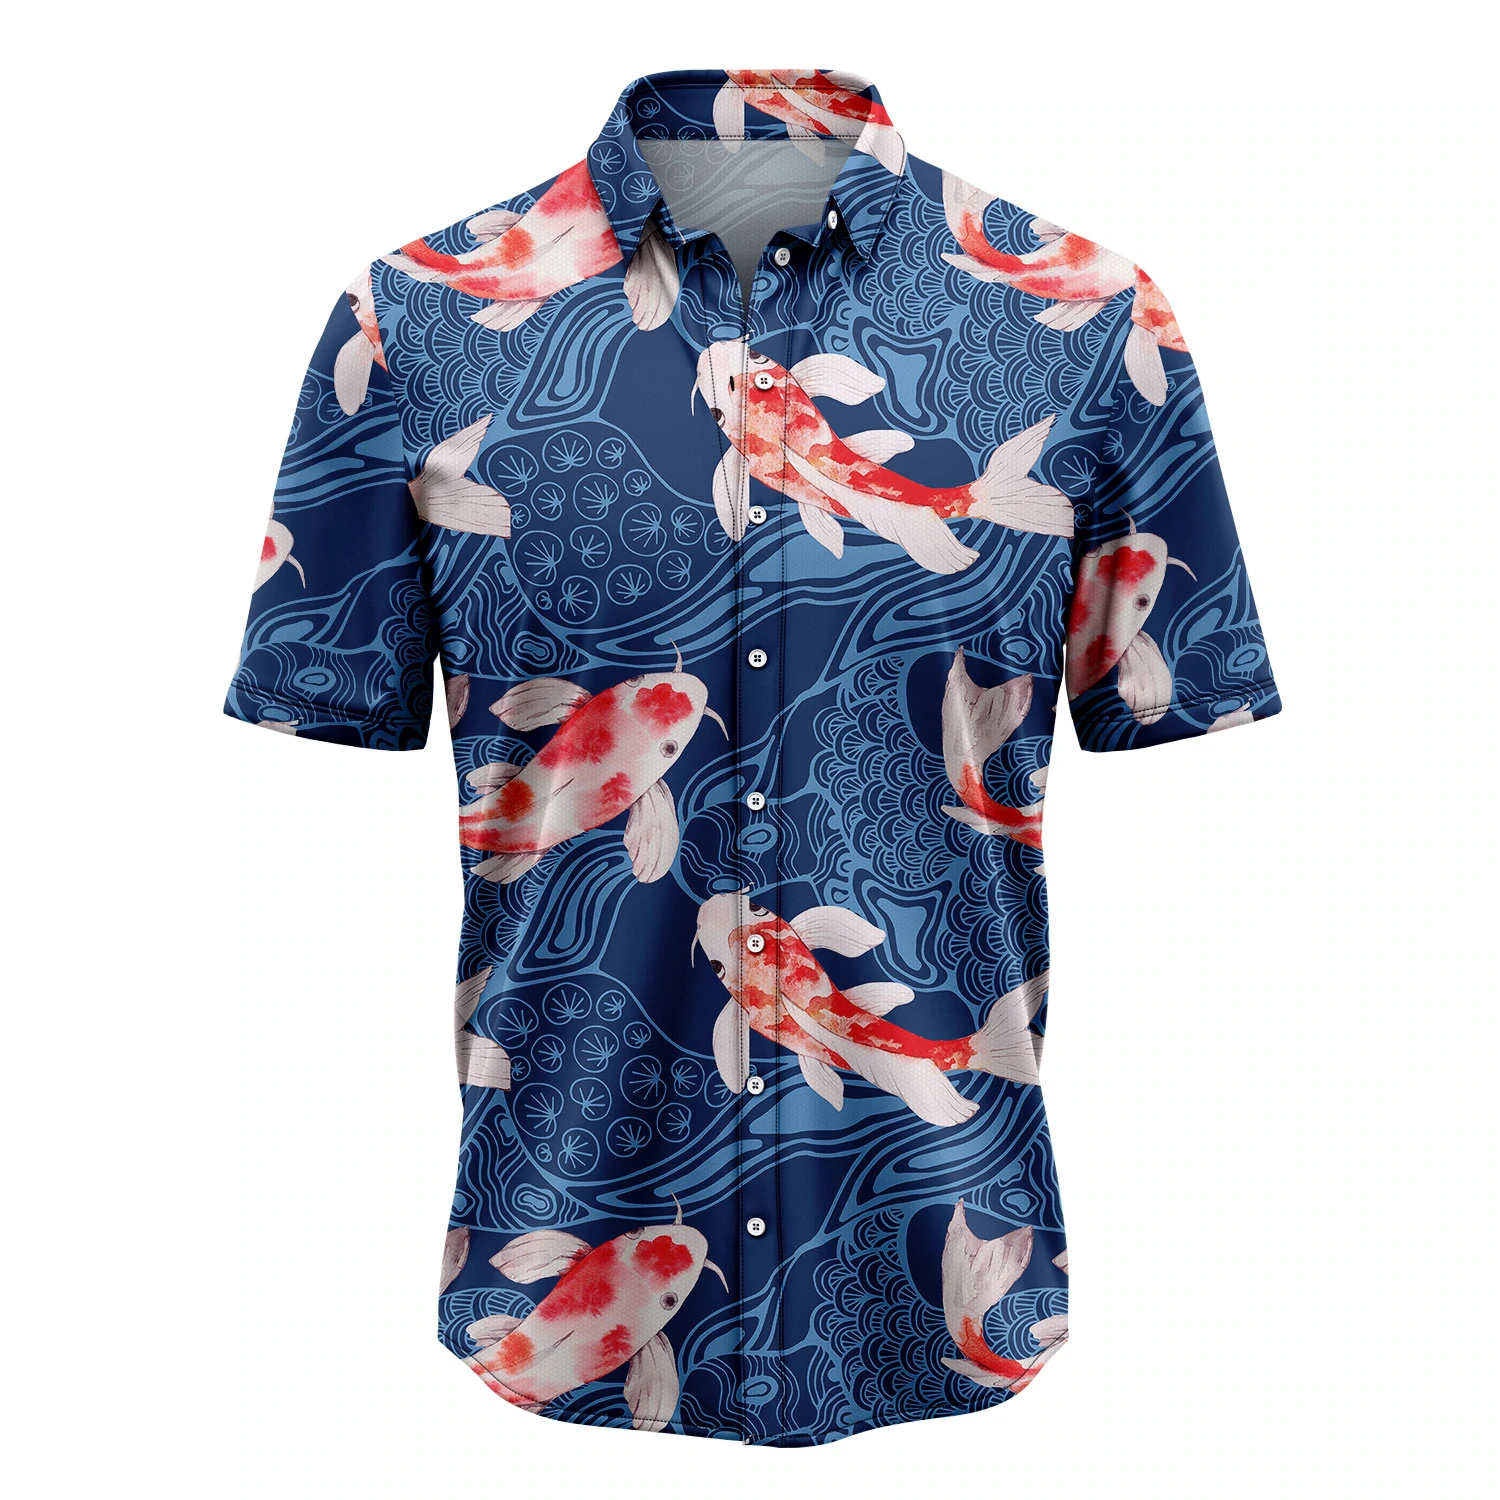 Koi Waves Hawaiian Shirt, Summer gift, Hawaiian Shirts for Men, Aloha Beach Shirt